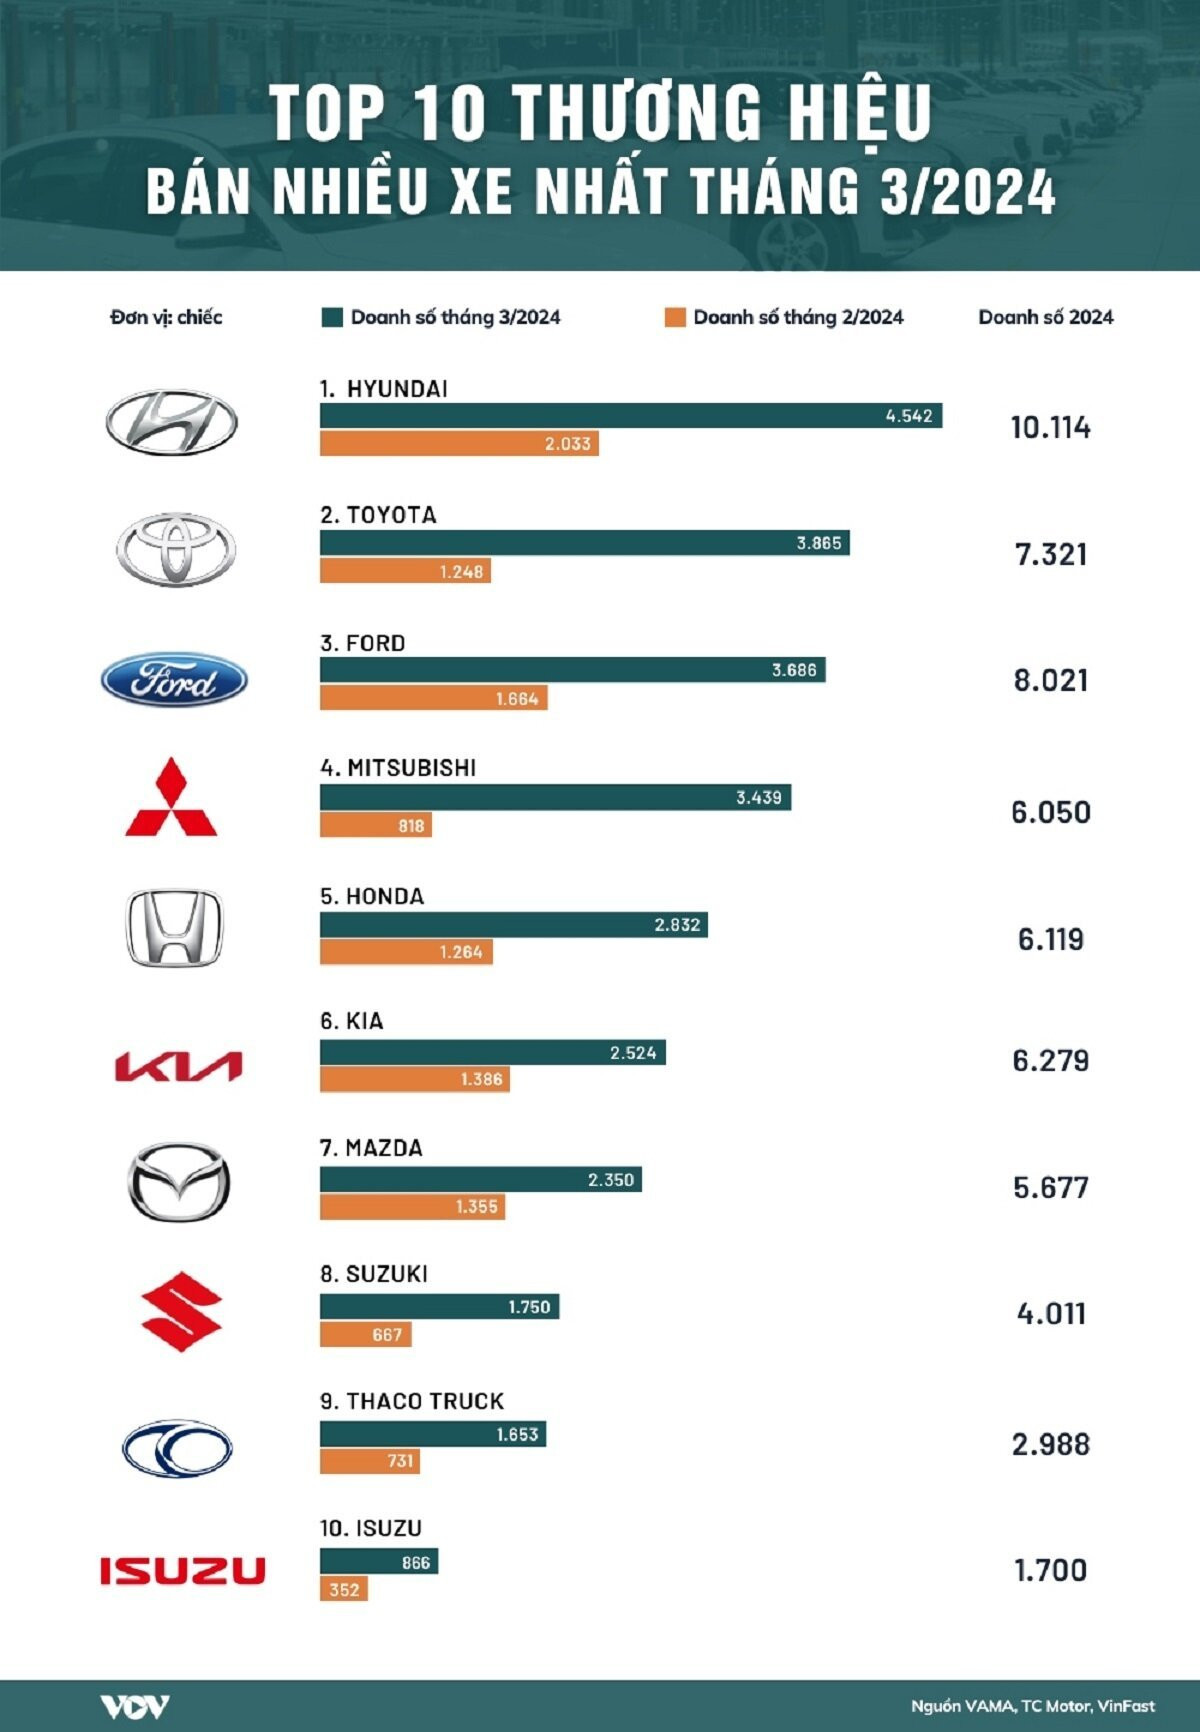 Top 10 thương hiệu xe ô tô bán chạy nhất đầu năm 2024.